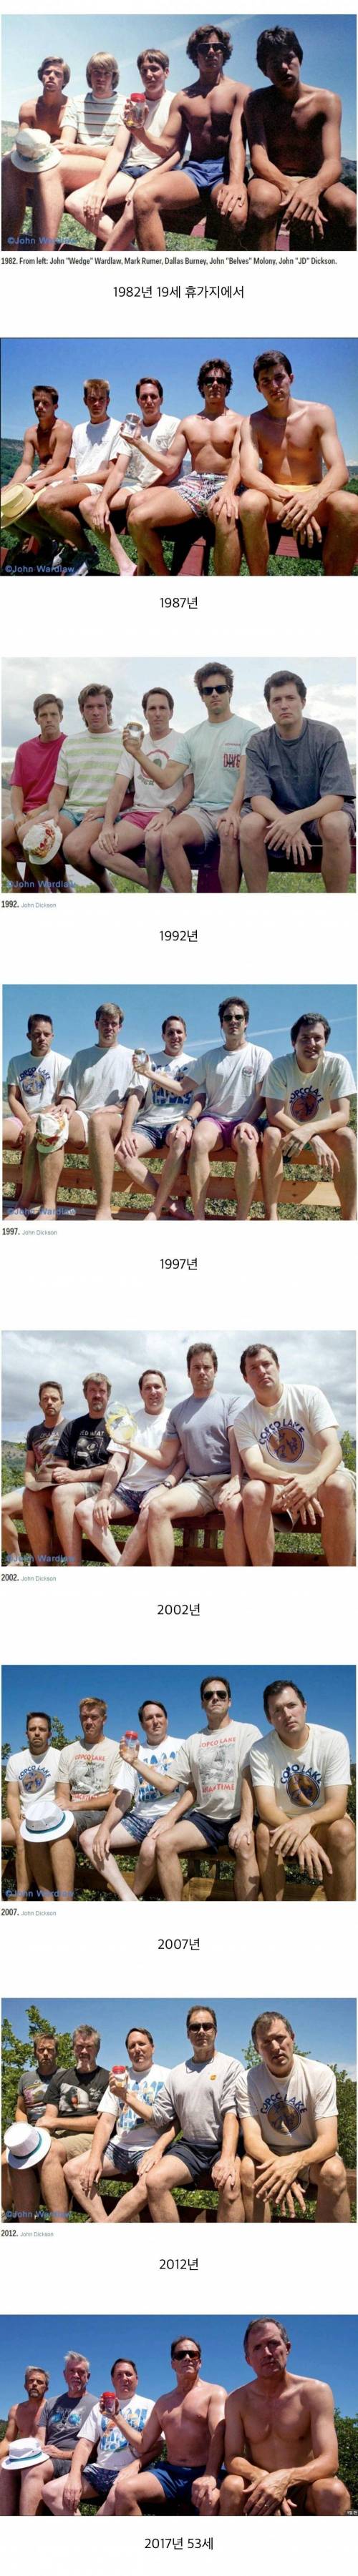 다섯 친구가 5년마다 35년간 찍은 사진